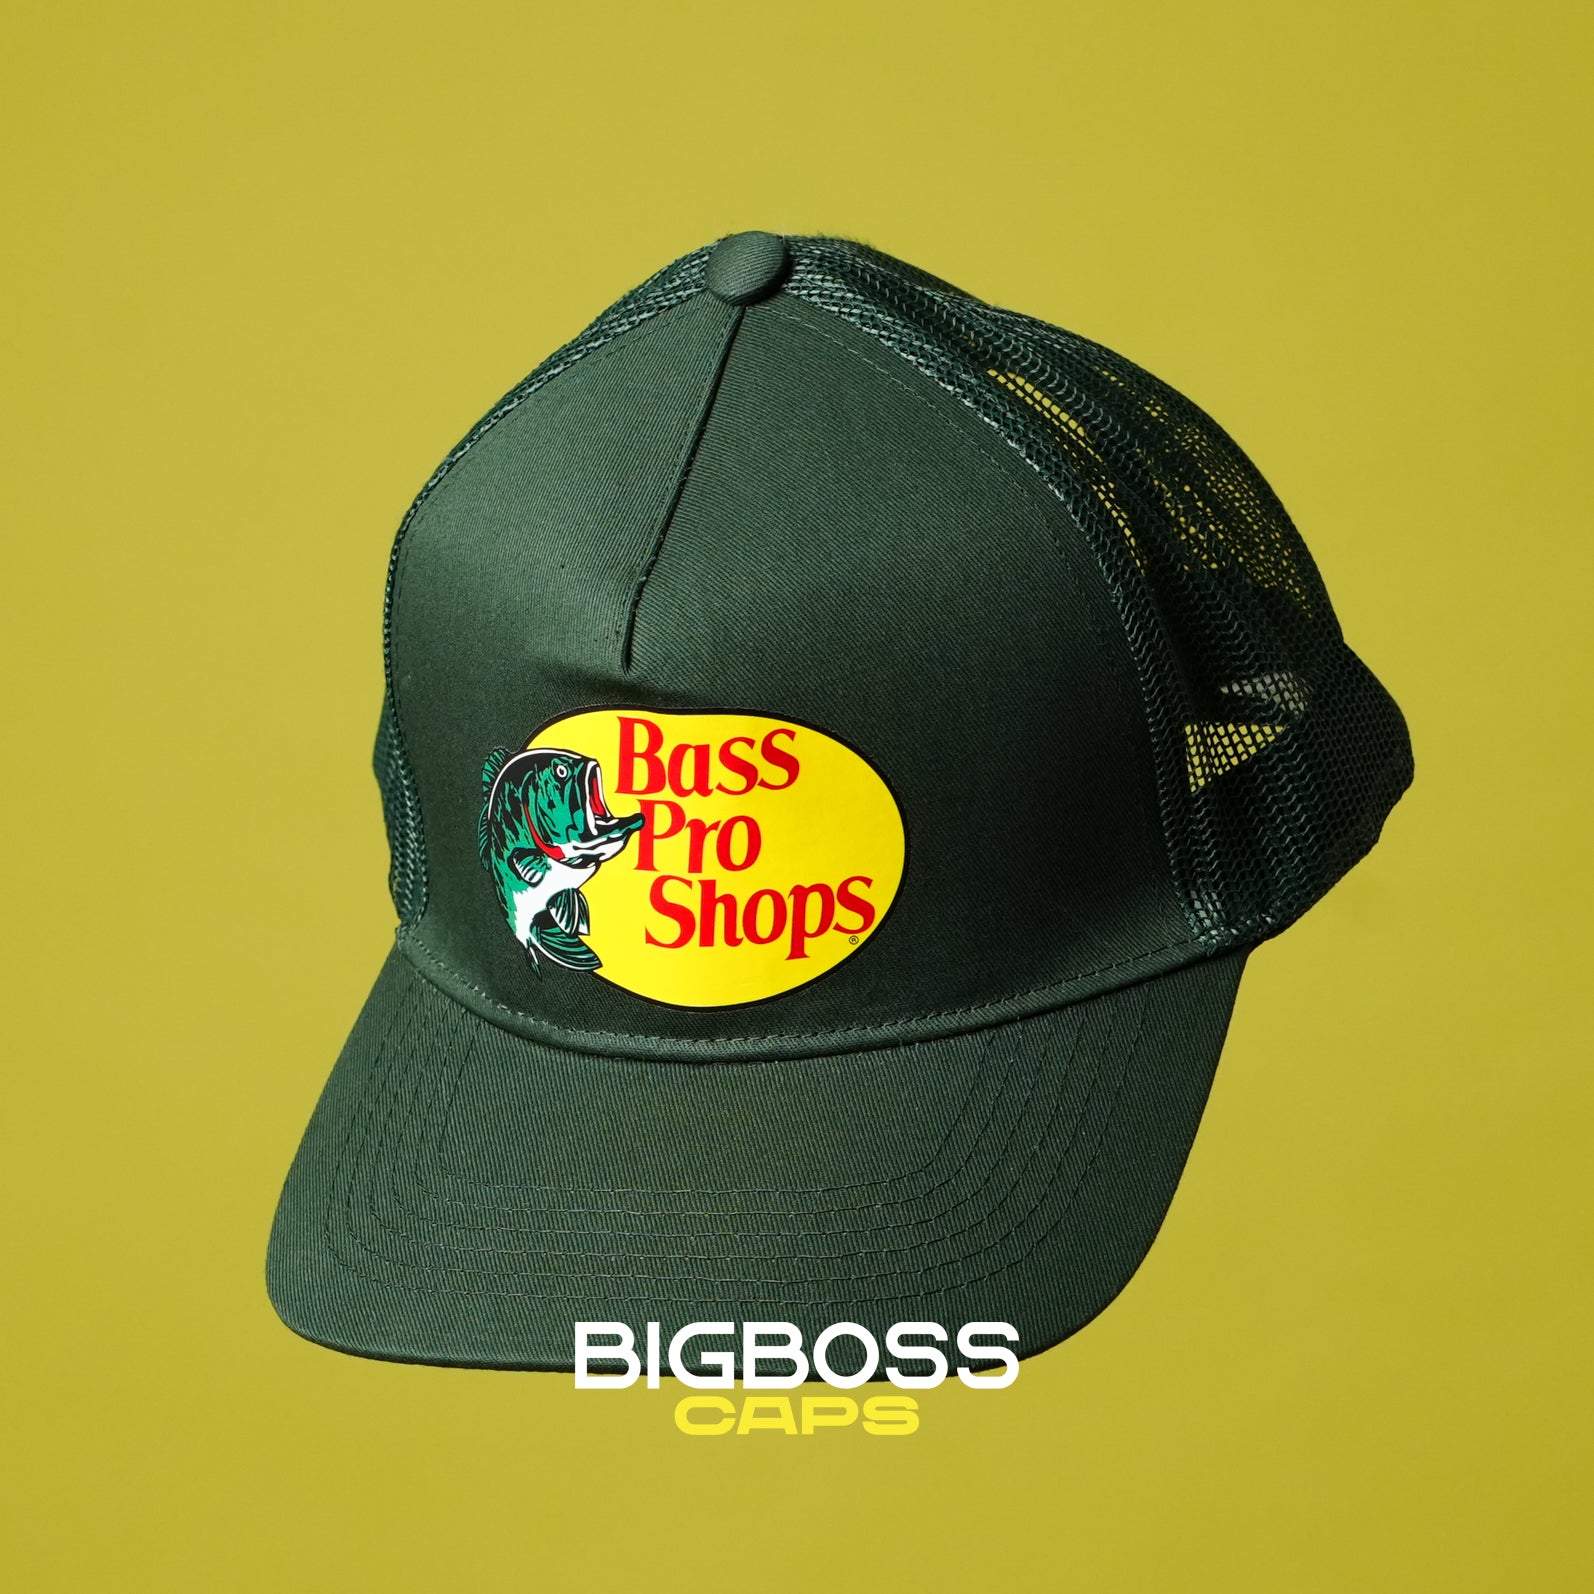 Bass Pro Shops verde – Bigboss Caps